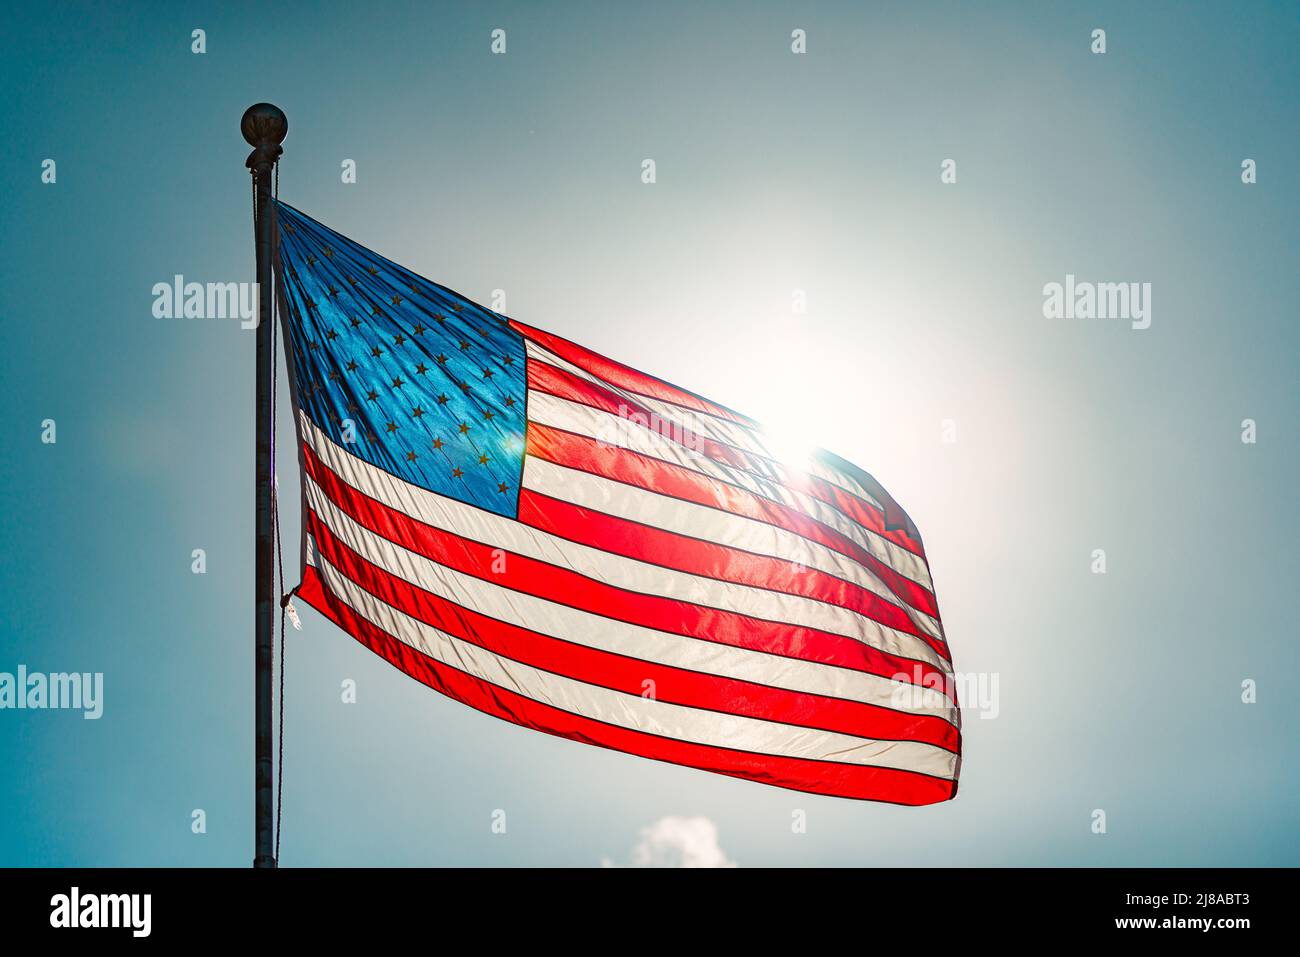 Bandera estadounidense y cielo azul nublado con nubes en el fondo Foto de stock